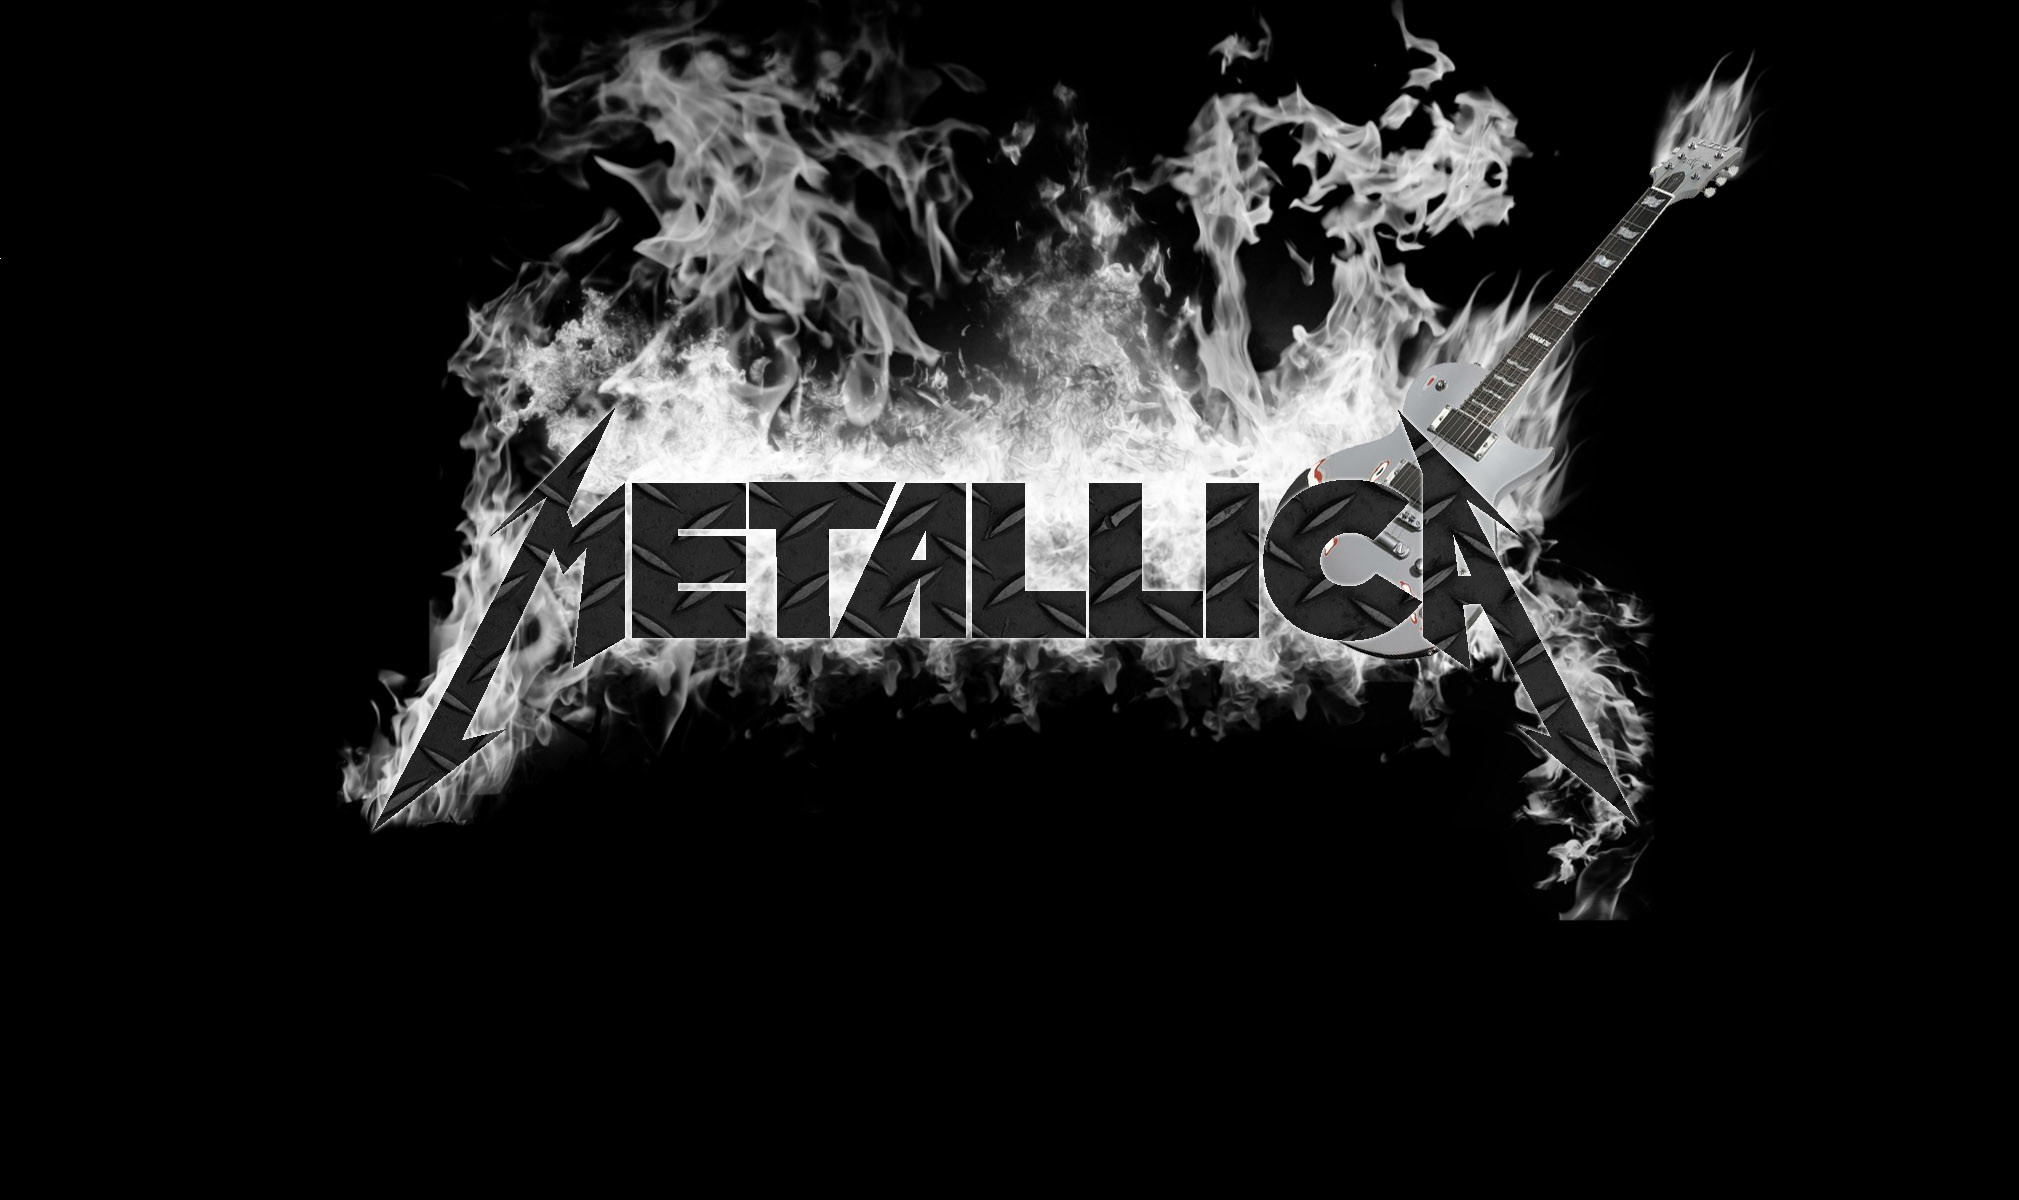 2019x1200 Metallica widescreen for desktop Metallica mobile